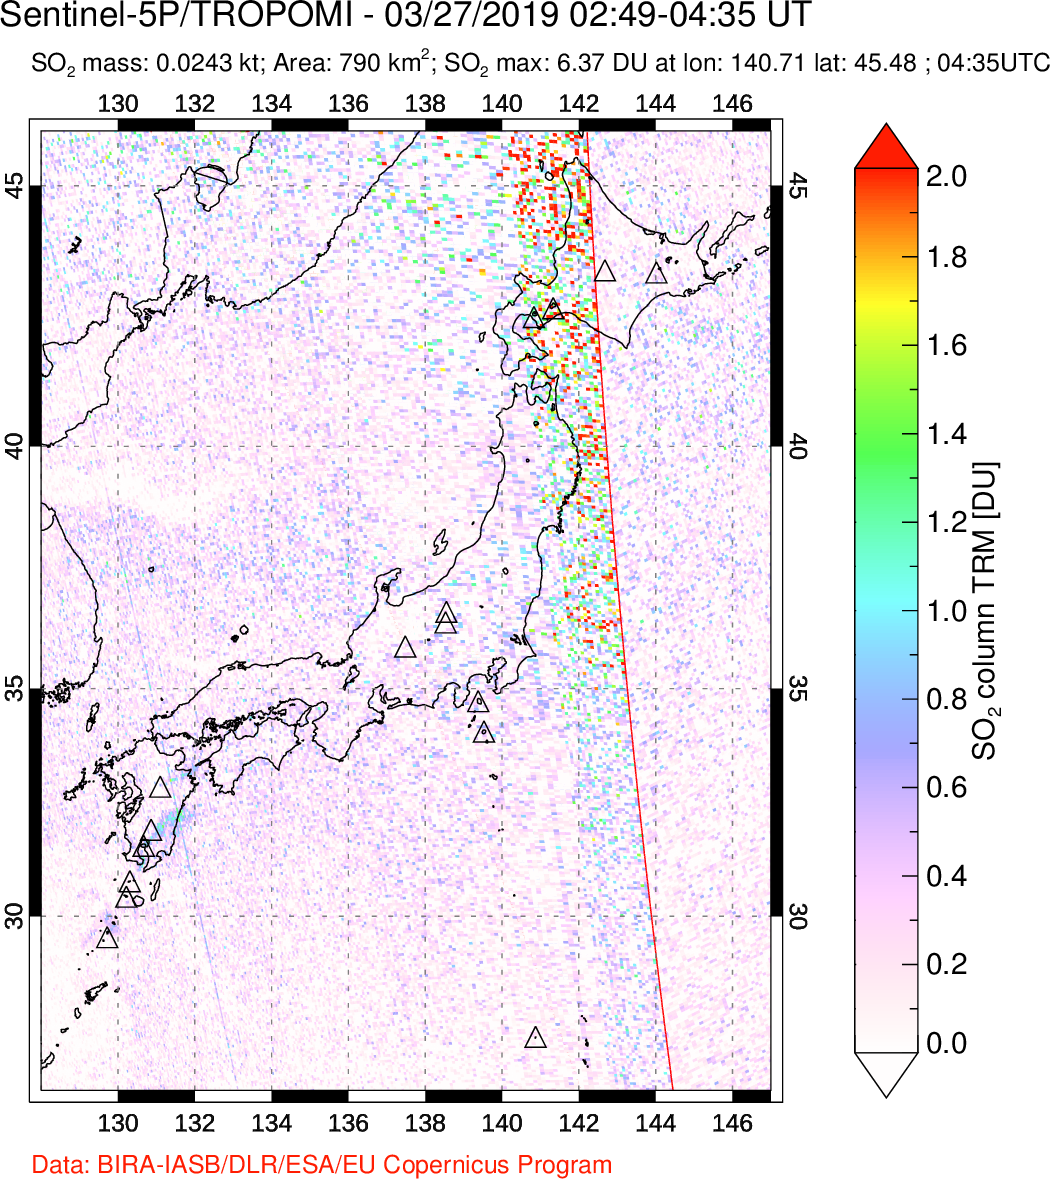 A sulfur dioxide image over Japan on Mar 27, 2019.